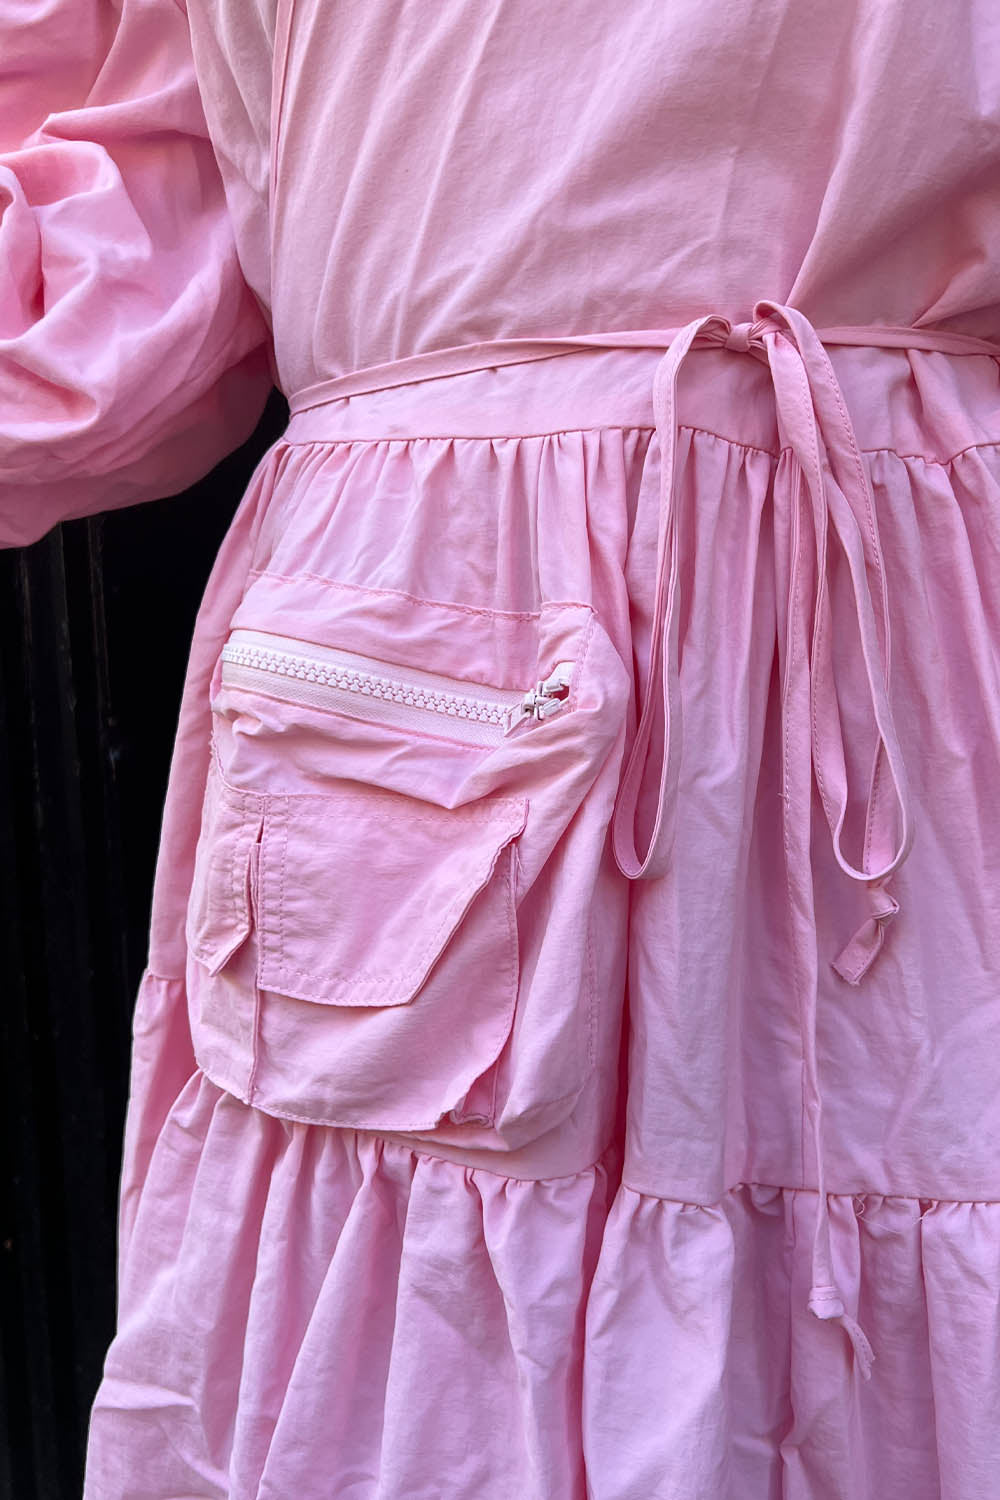 KkCo - Utility Wrap Dress: Ballet Pink